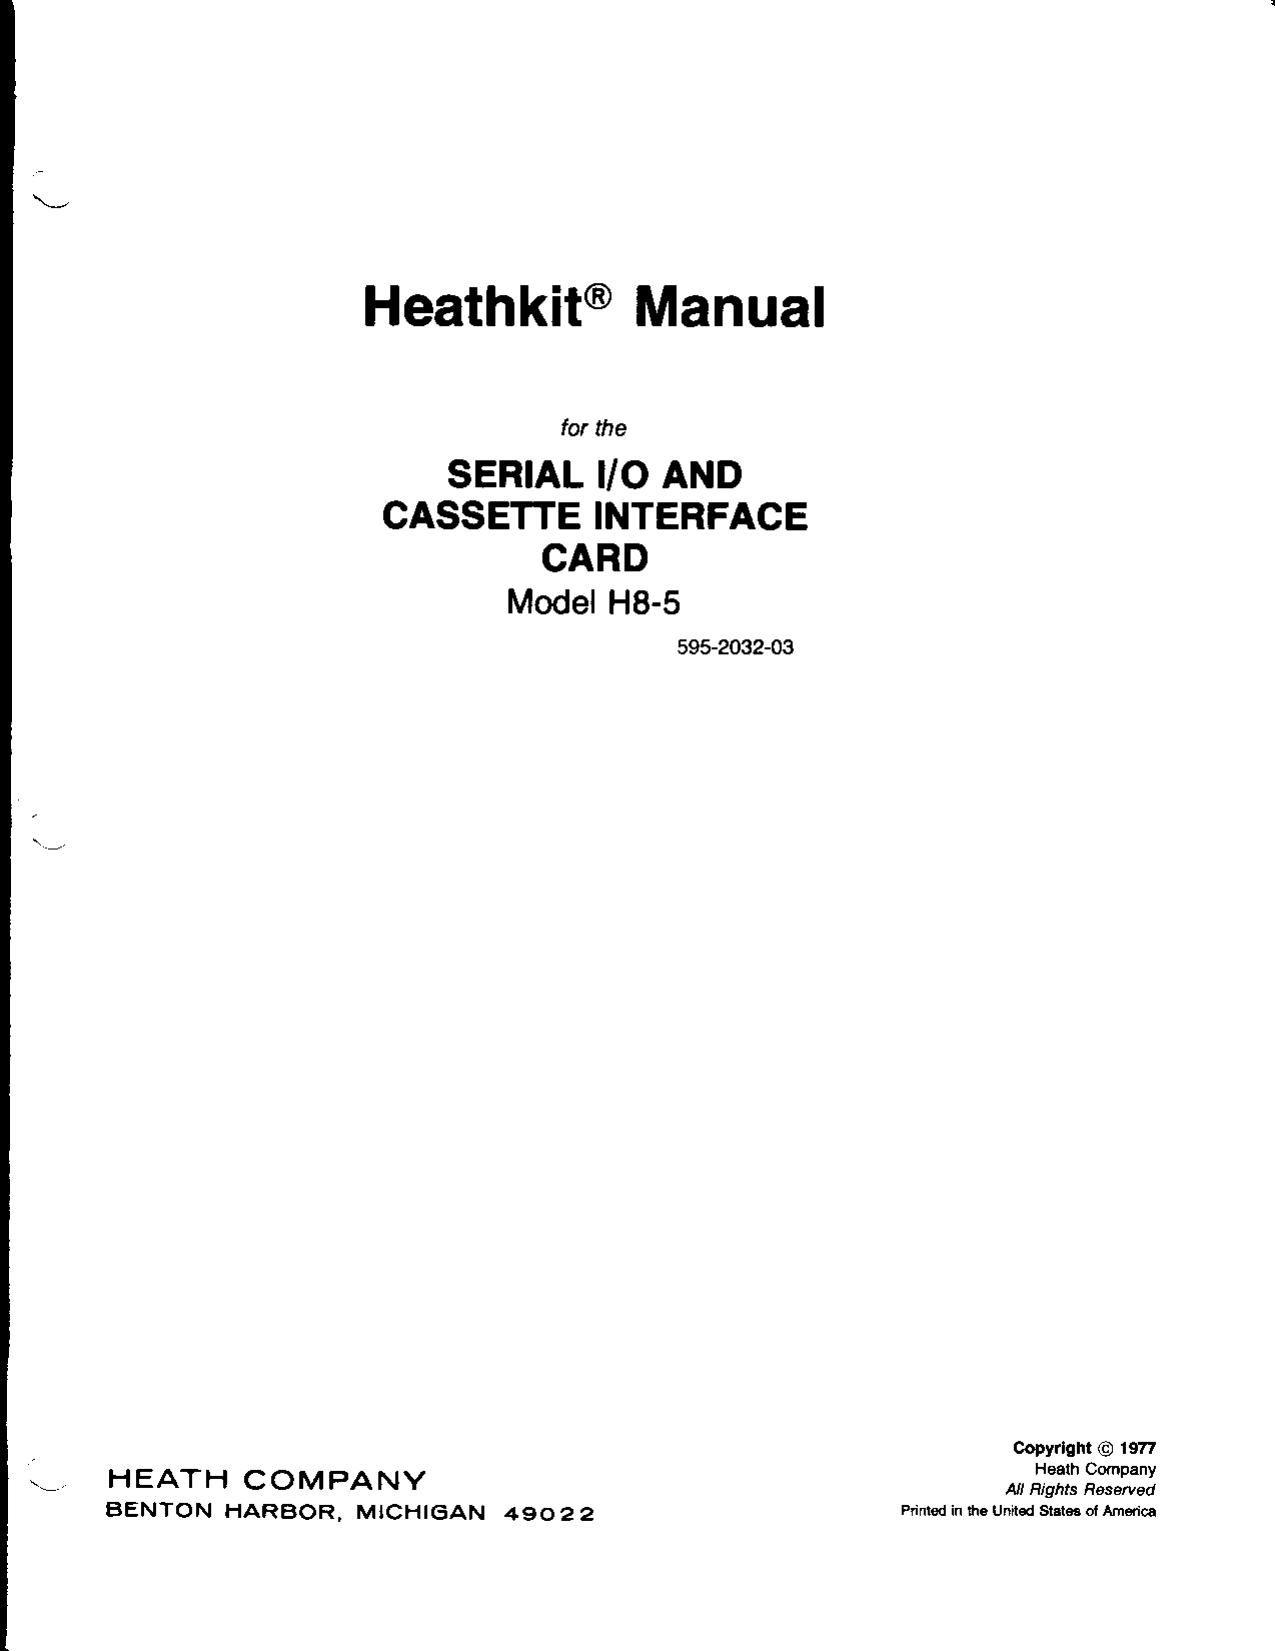 Heathkit H 8 5 Manual